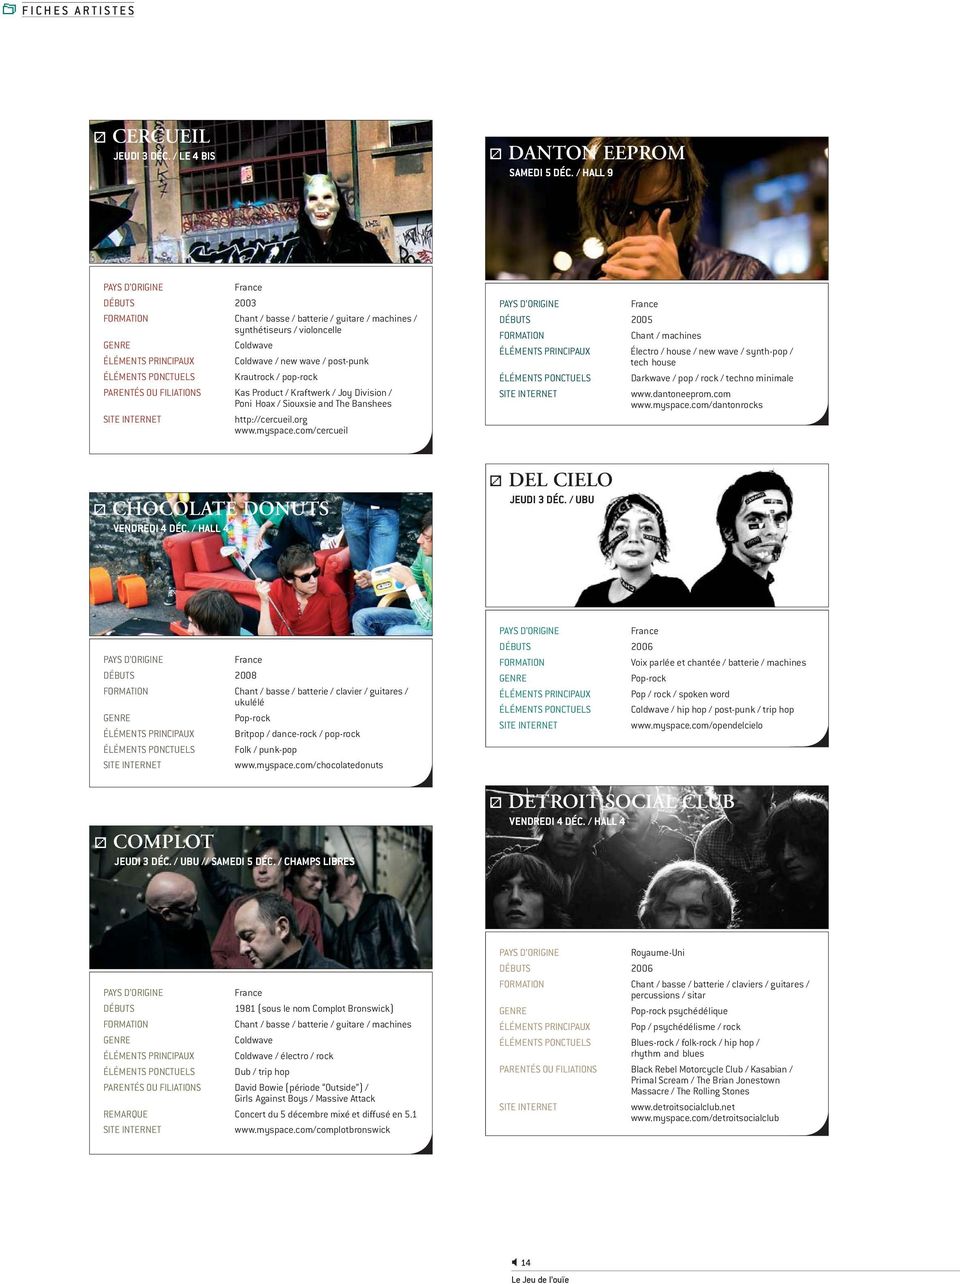 PARENTÉS OU FILIATIONS Kas Product / Kraftwerk / Joy Division / Poni Hoax / Siouxsie and The Banshees http://cercueil.org www.myspace.